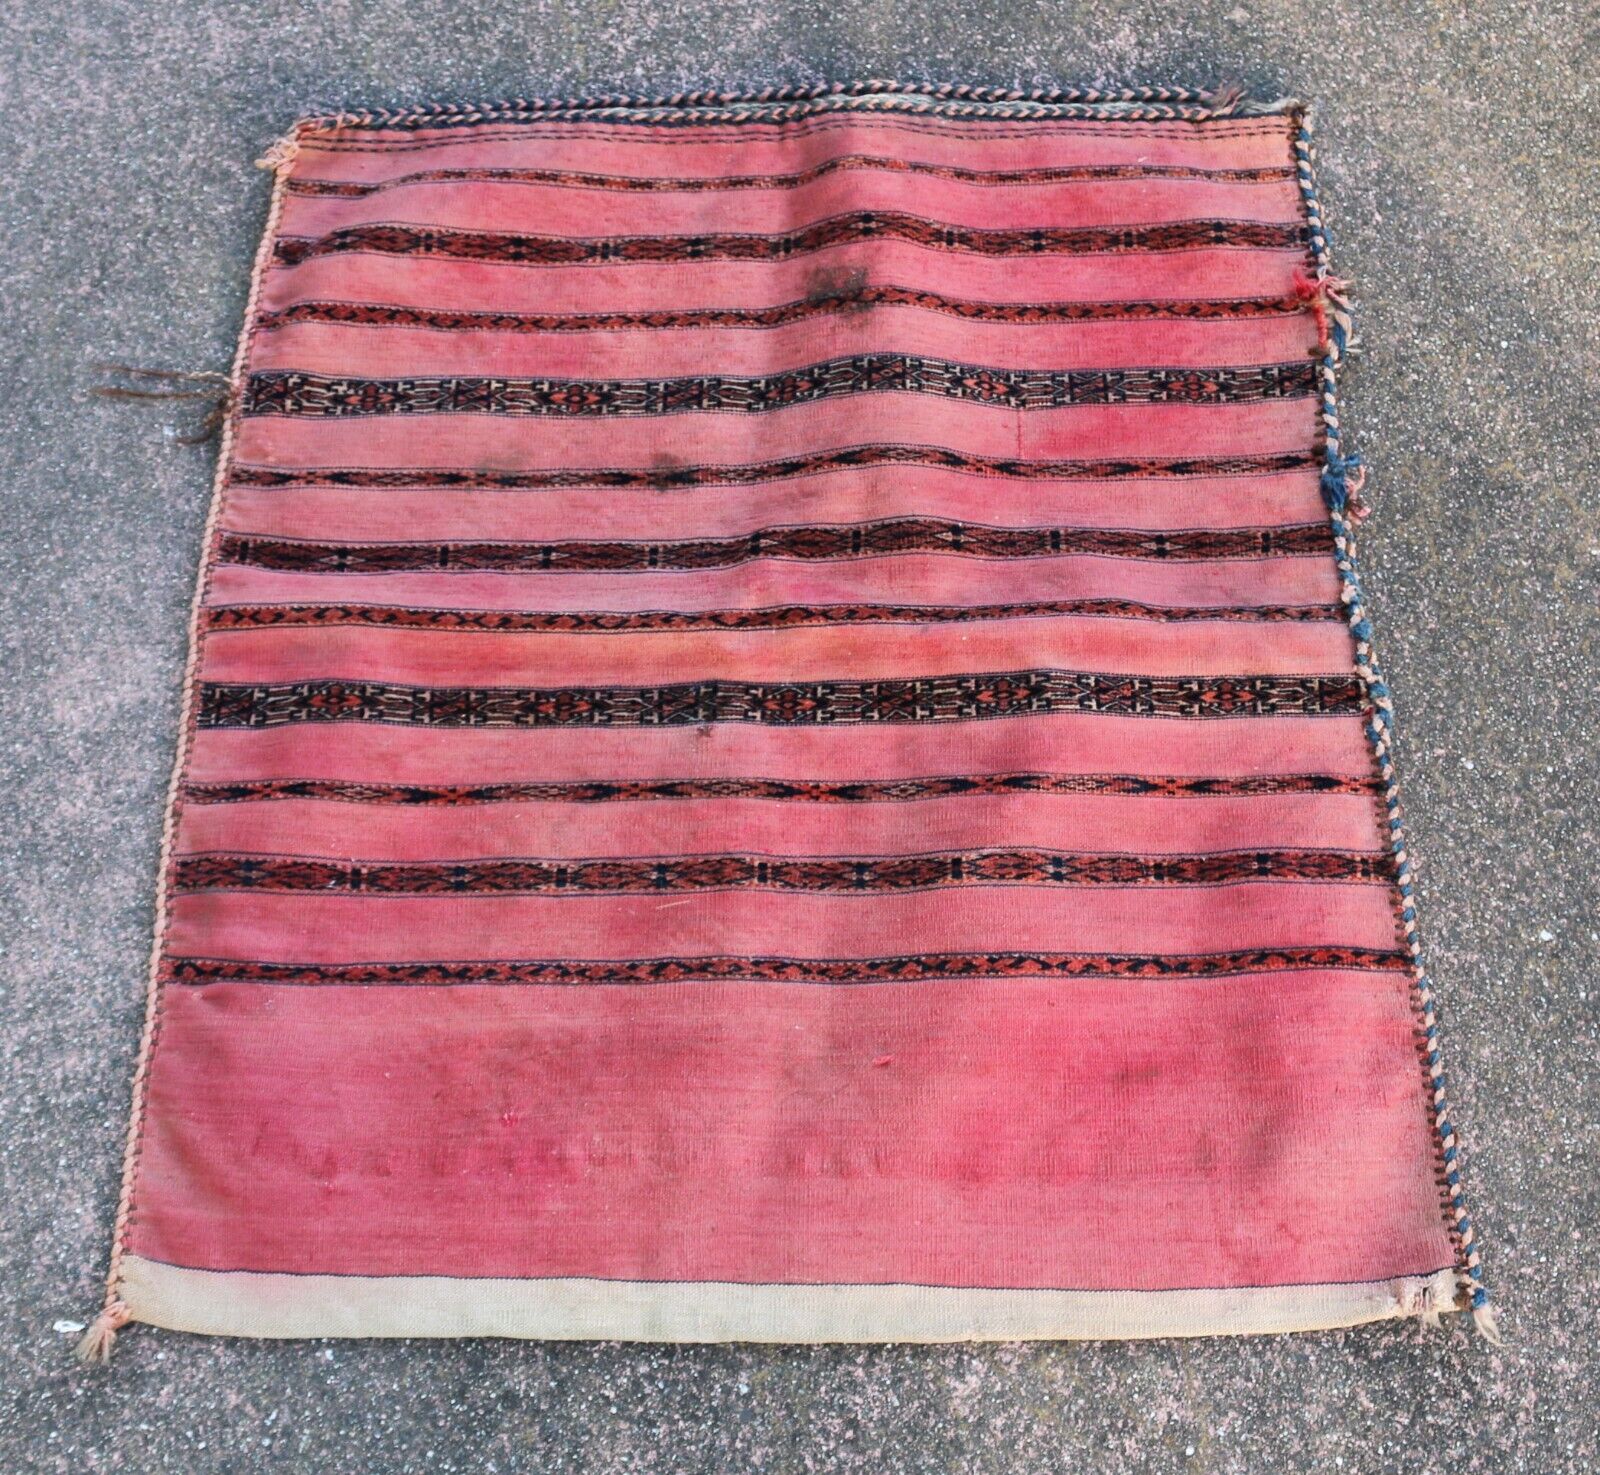 Antique Ethnographic Ersari or Tekke Turkoman Tent Bag 2'10"h x 2'8"w circa 1900